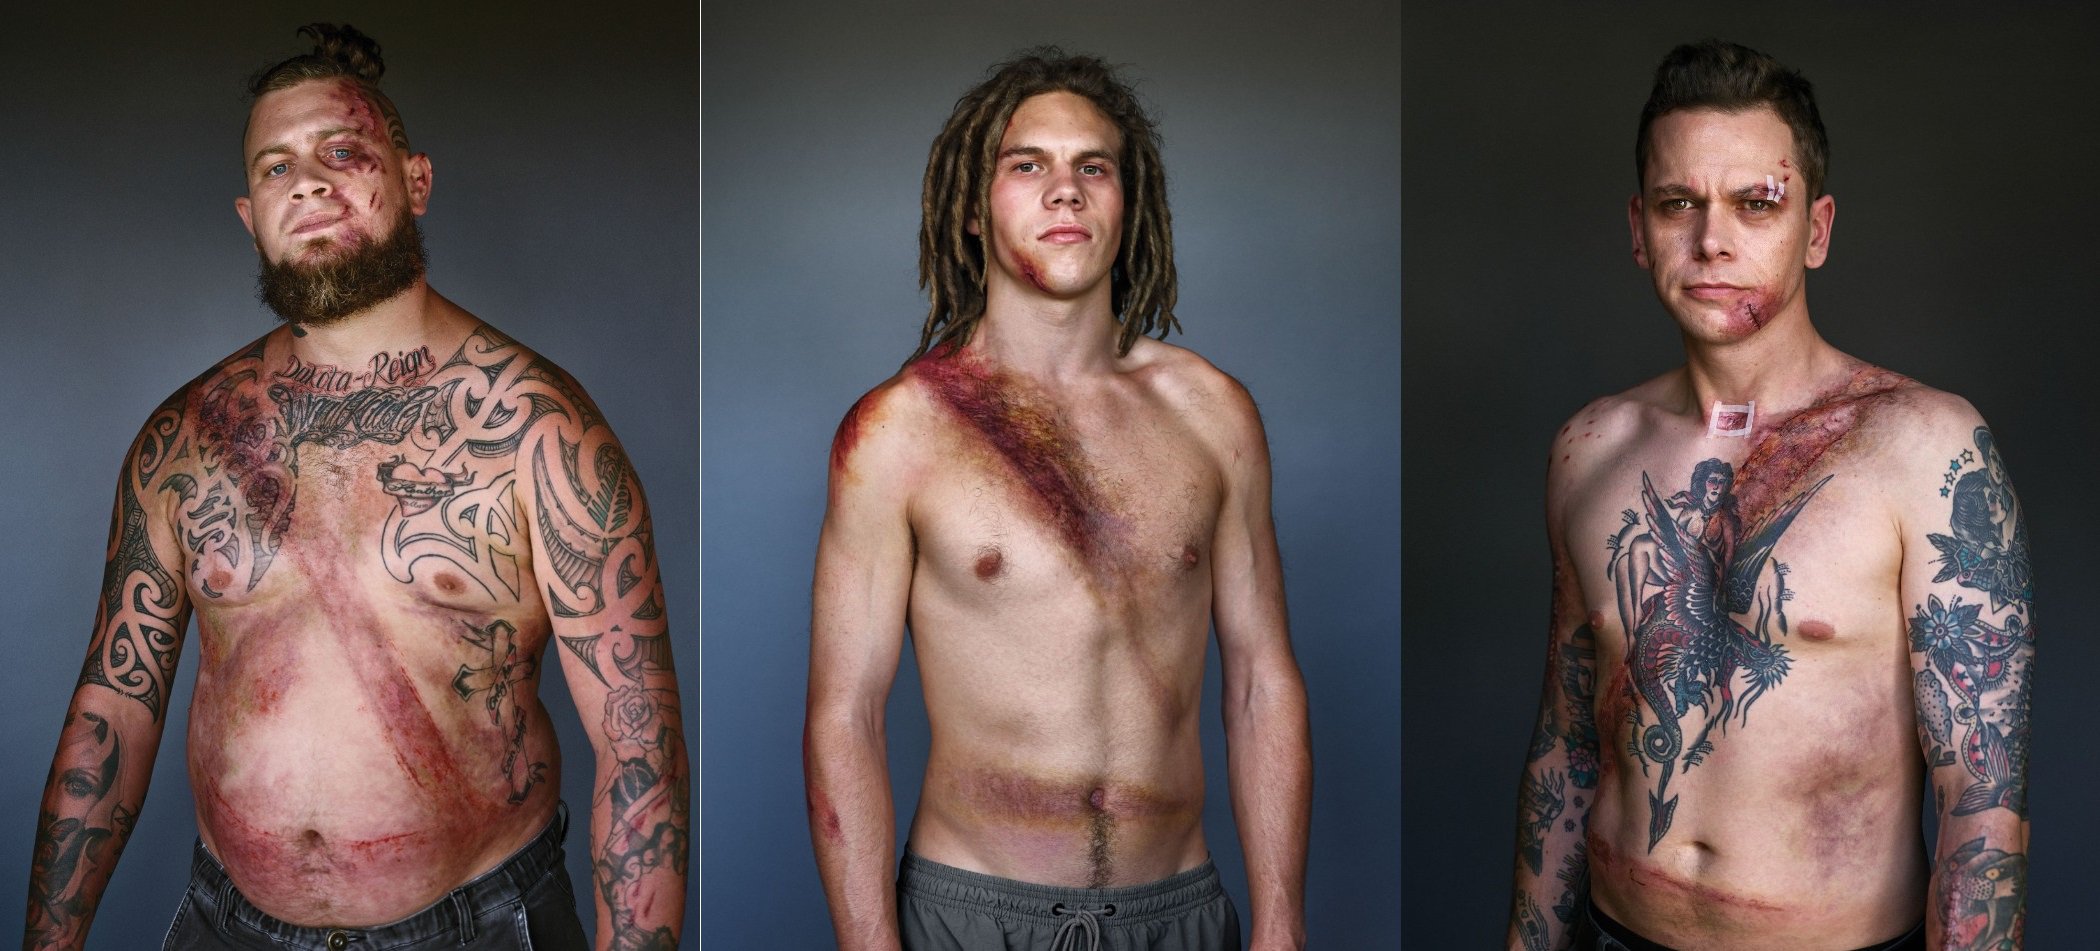 Οι σοκαριστικές φωτογραφίες 10 ανθρώπων που (ευτυχώς) φορούσαν ζώνη